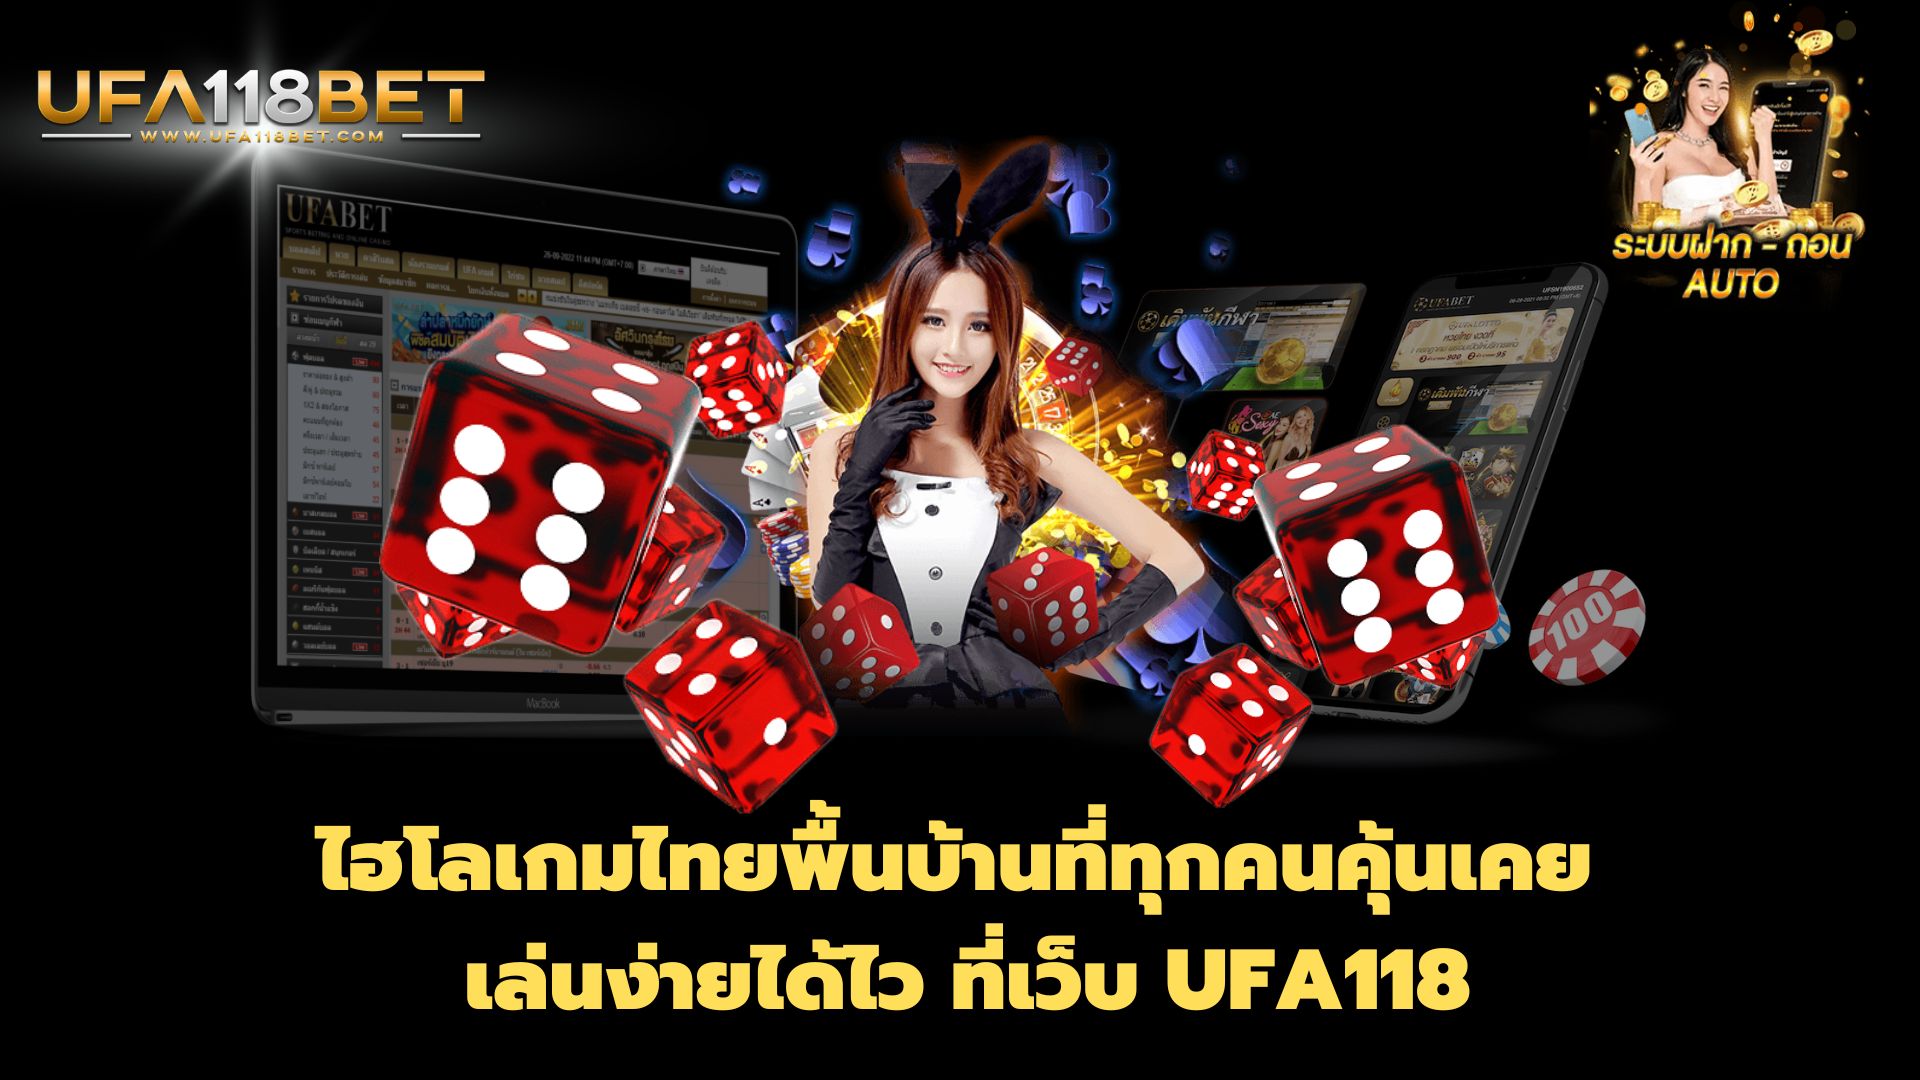 ไฮโลเกมไทยพื้นบ้านที่ทุกคนคุ้นเคย เล่นง่ายได้ไว ที่เว็บ UFA118